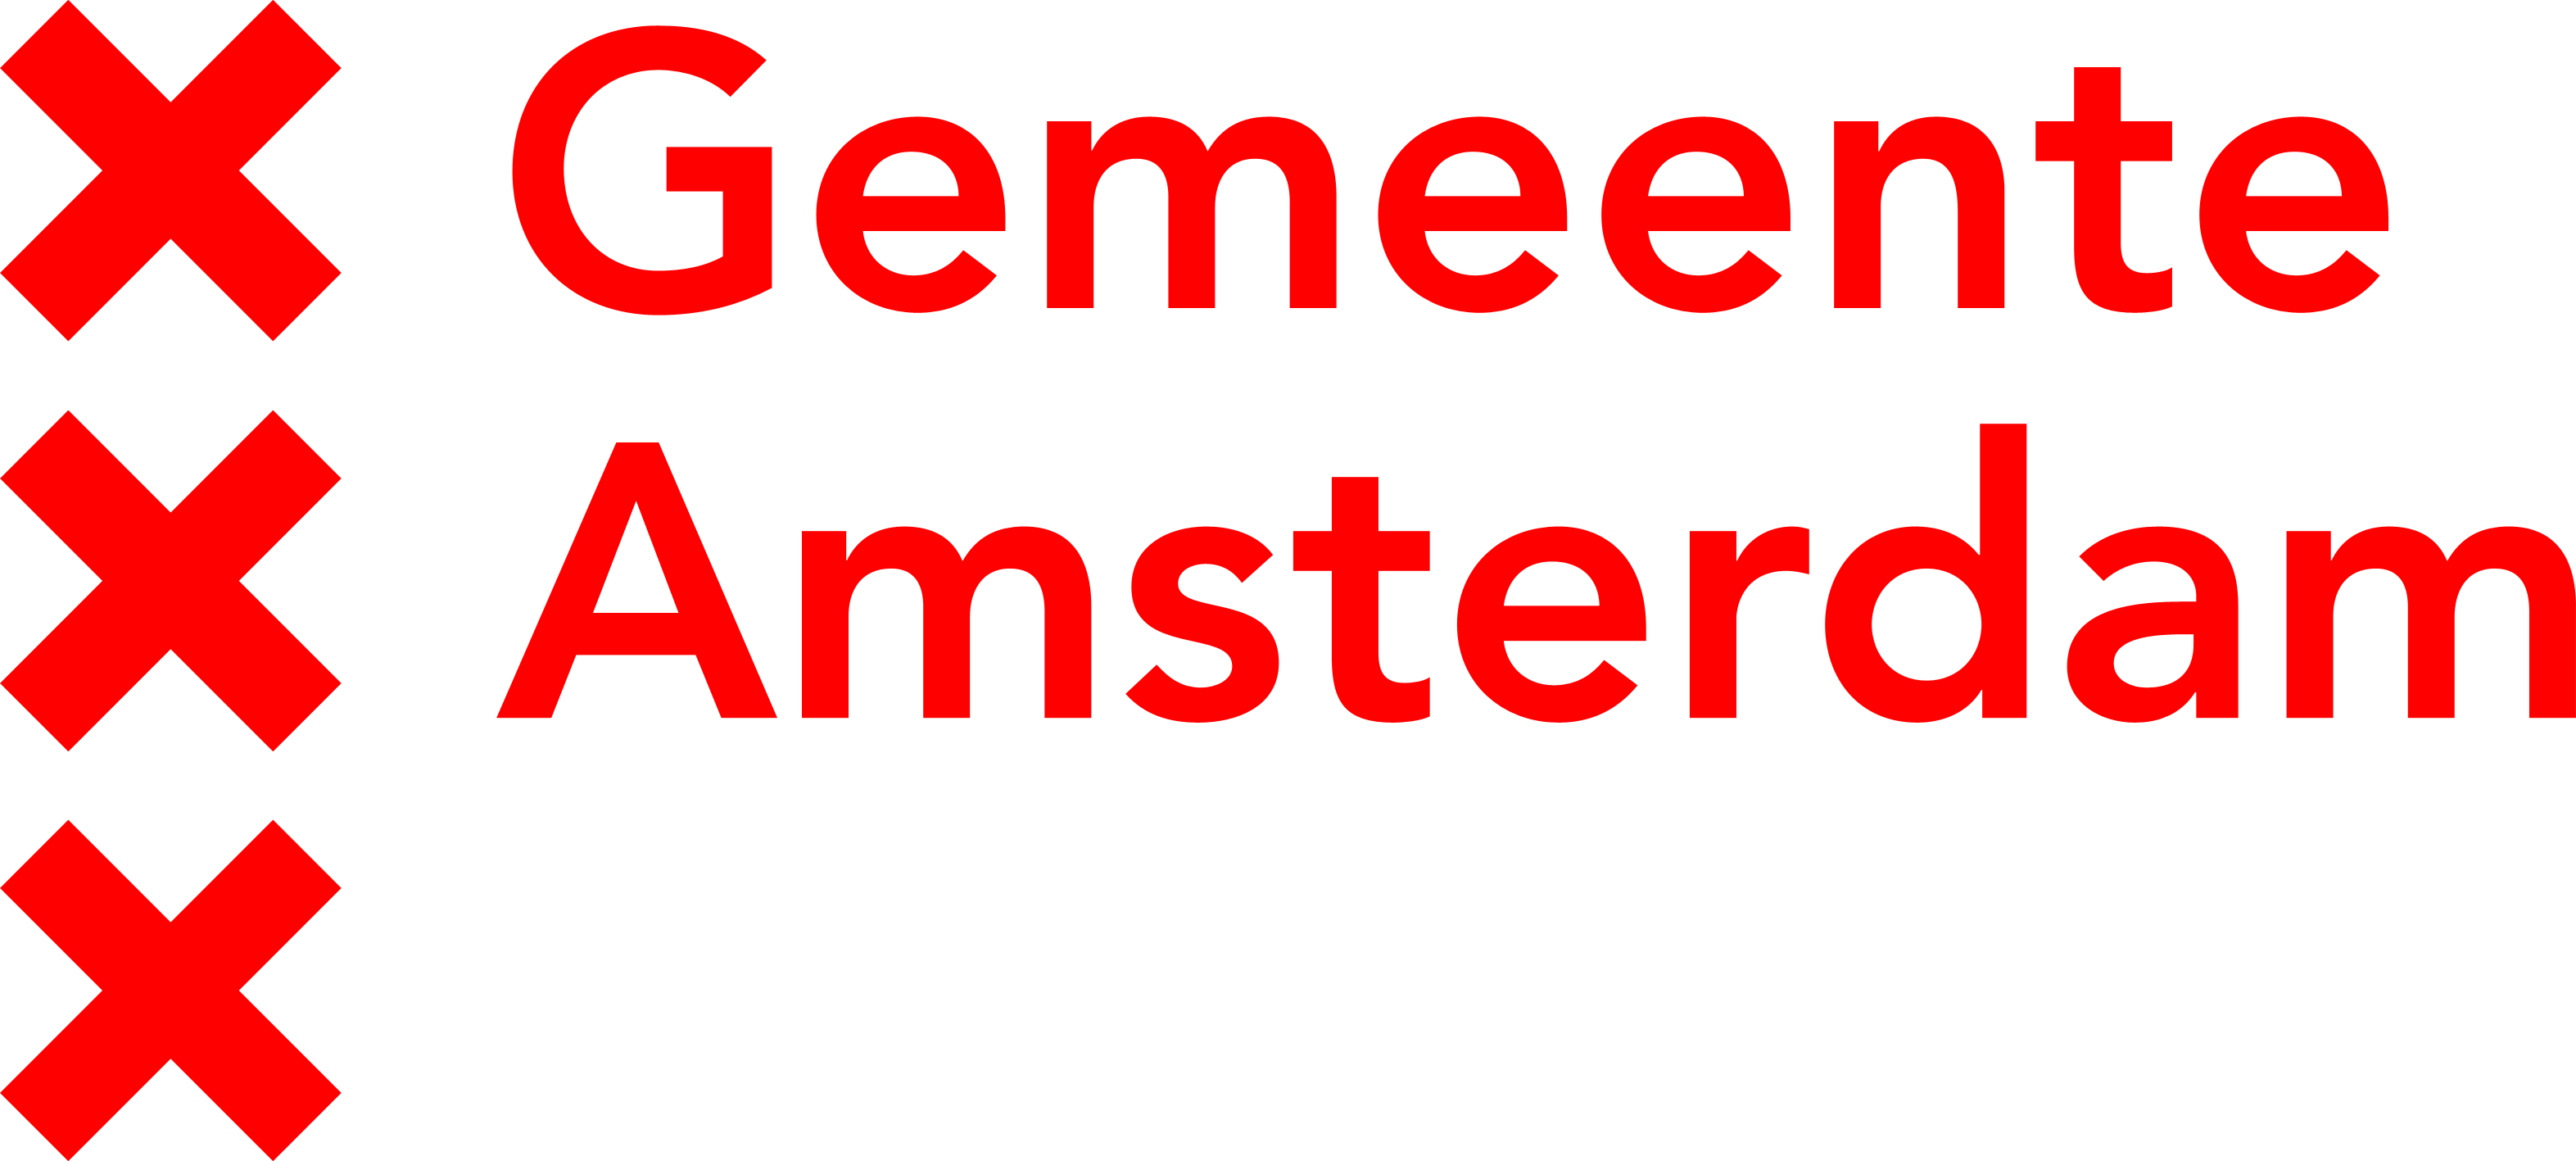 Amsterdam Gemeente